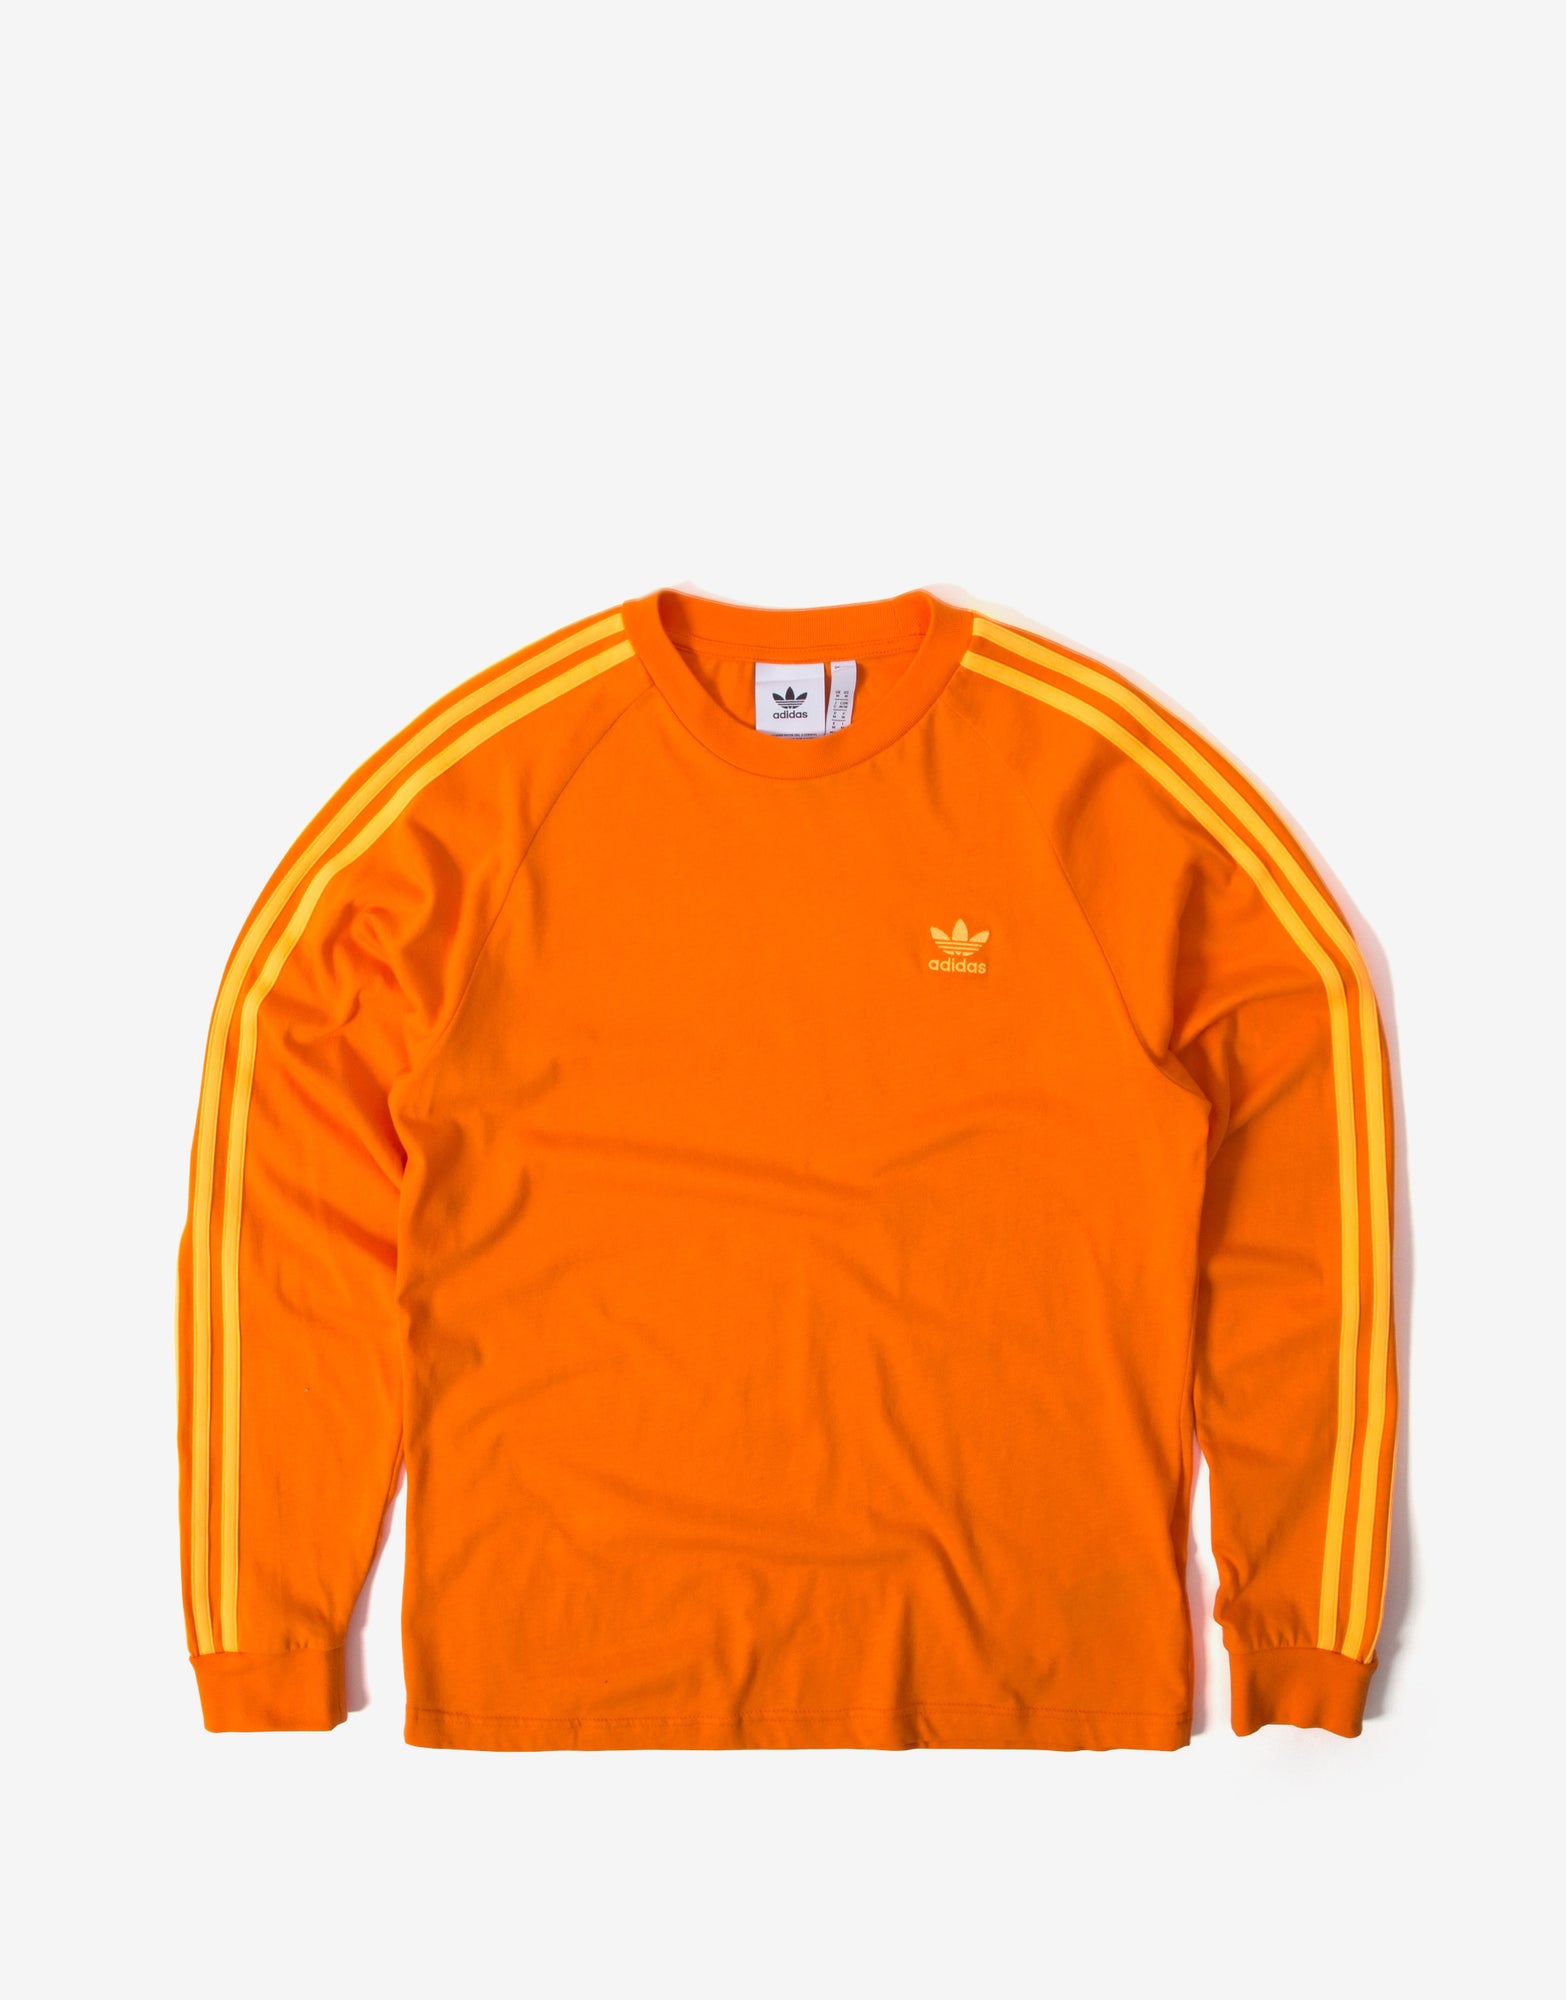 adidas long sleeve orange